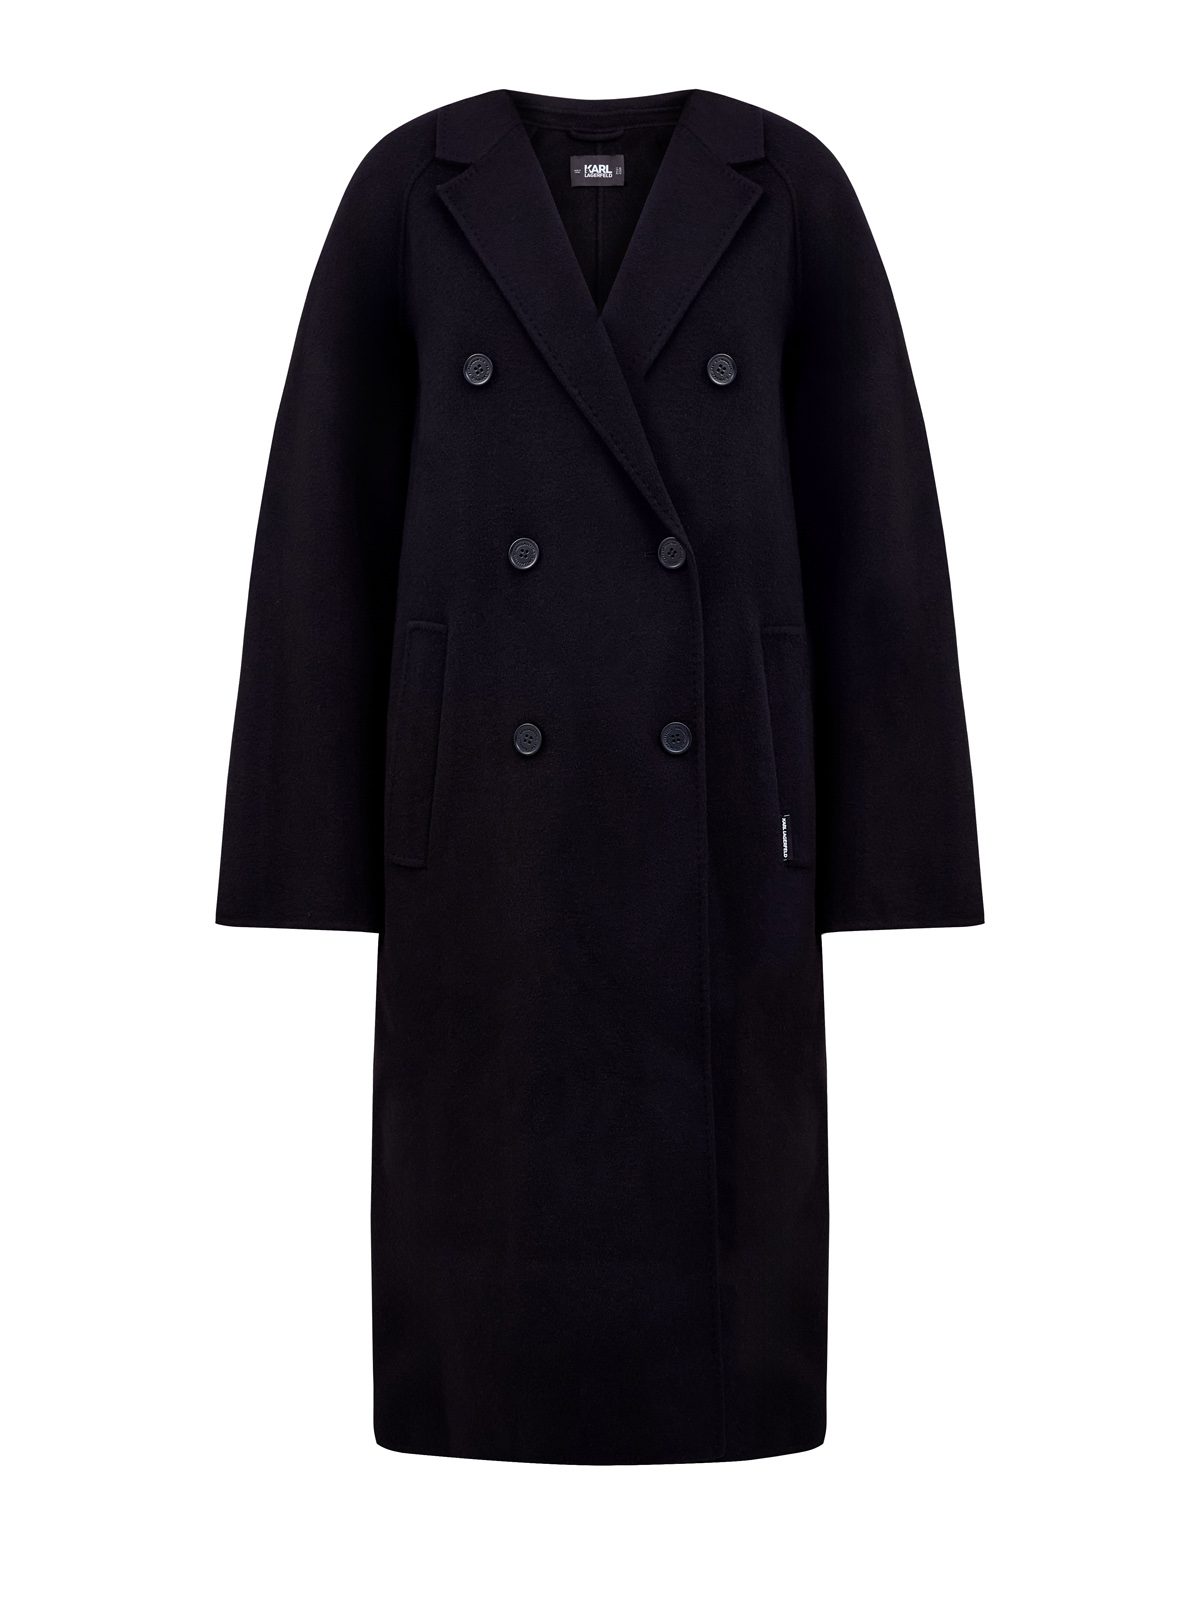 Двубортное пальто кроя oversize из плотной шерстяной ткани KARL LAGERFELD, цвет черный, размер 42;44;46;48